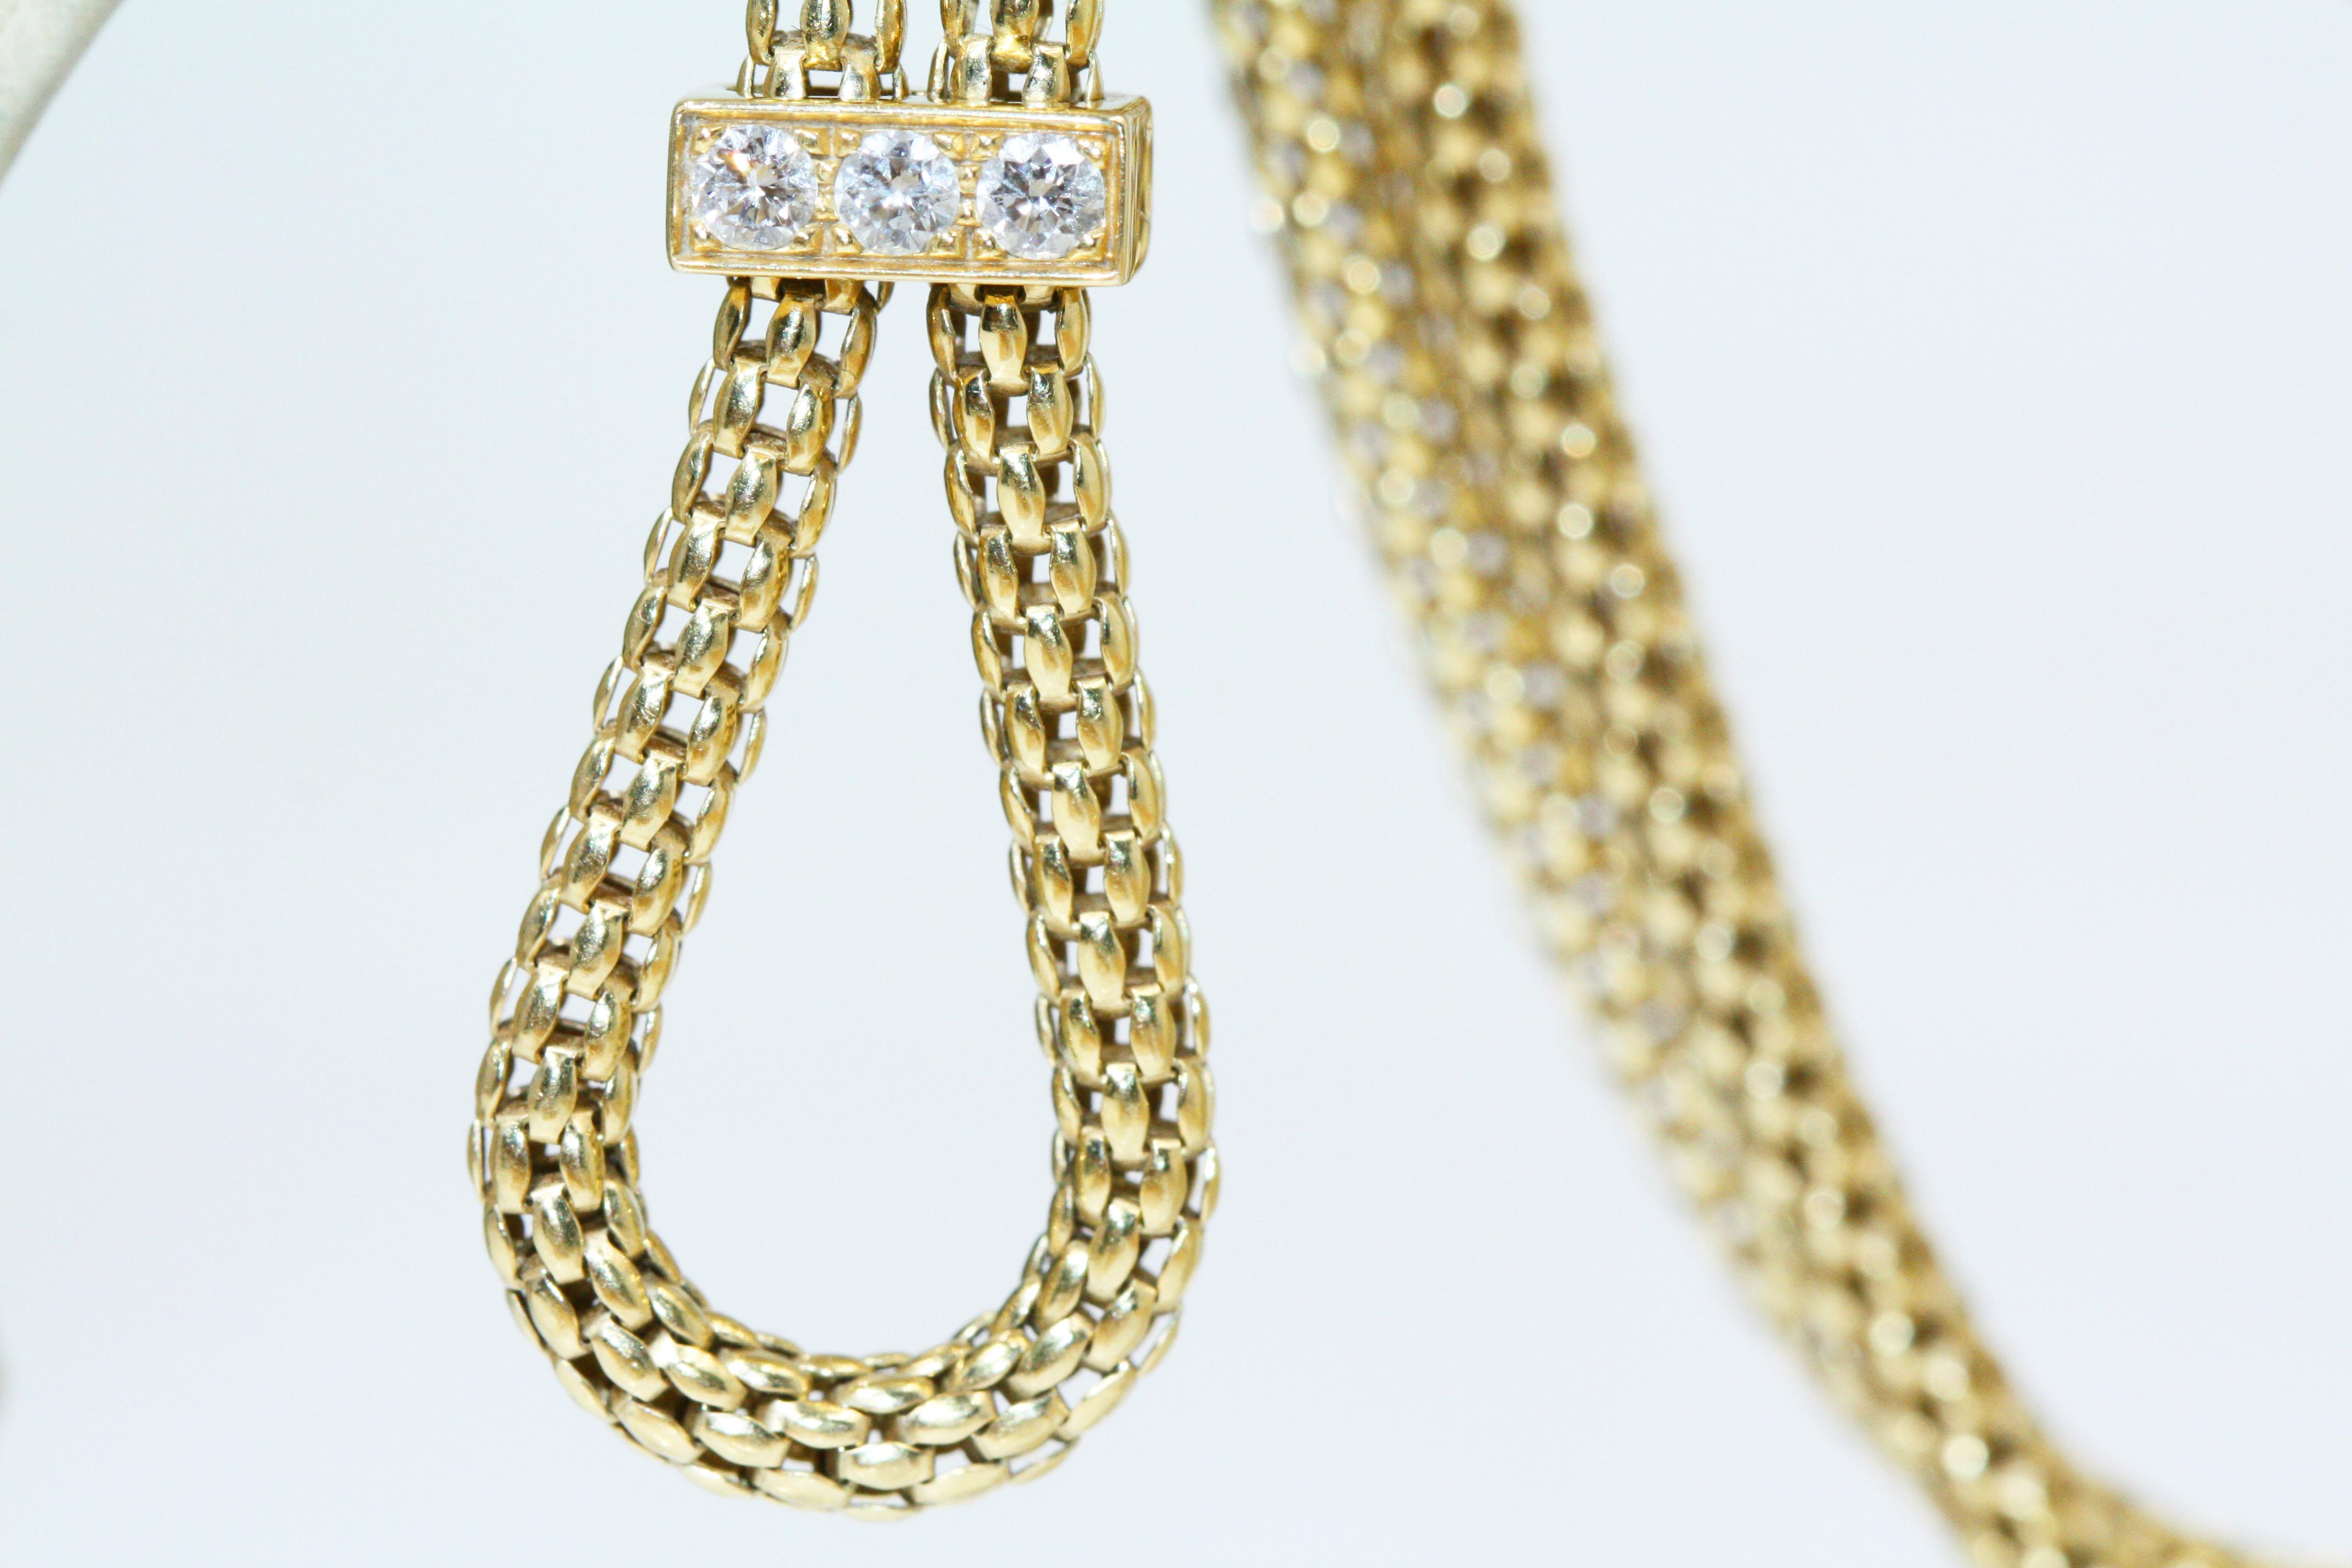 Cartier Panthère de Bracelet, Gold Lacquer, Diamond, Tsavorite Garnets, Onyx For Sale 6